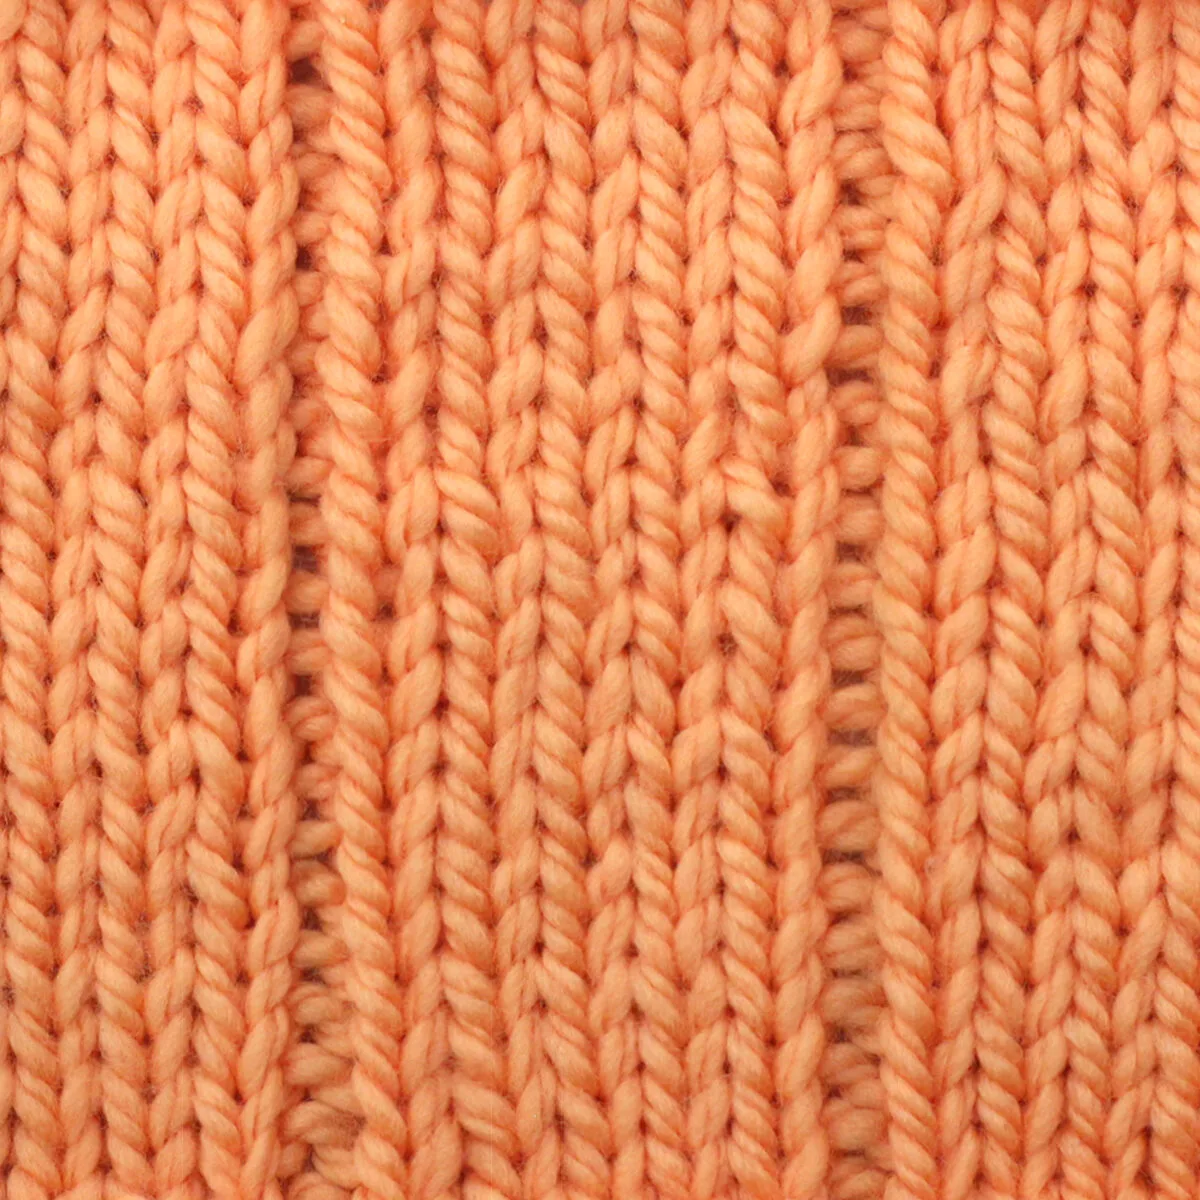 5x1 Flat Rib Stitch Knitting Pattern for Beginners - Studio Knit